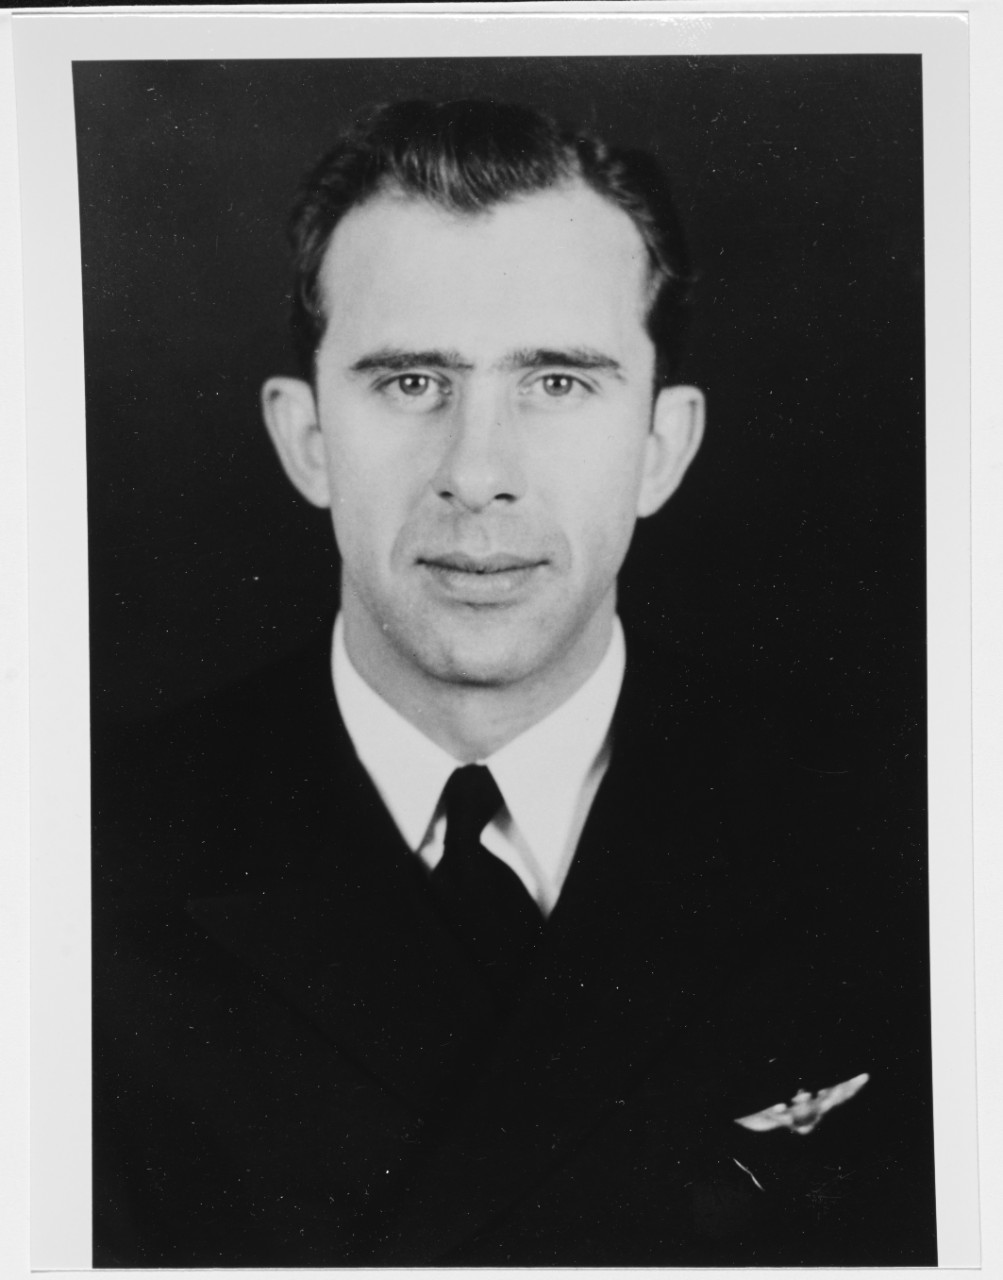 Lieutenant Junior Grade John H. Fette, USN. Circa 1949